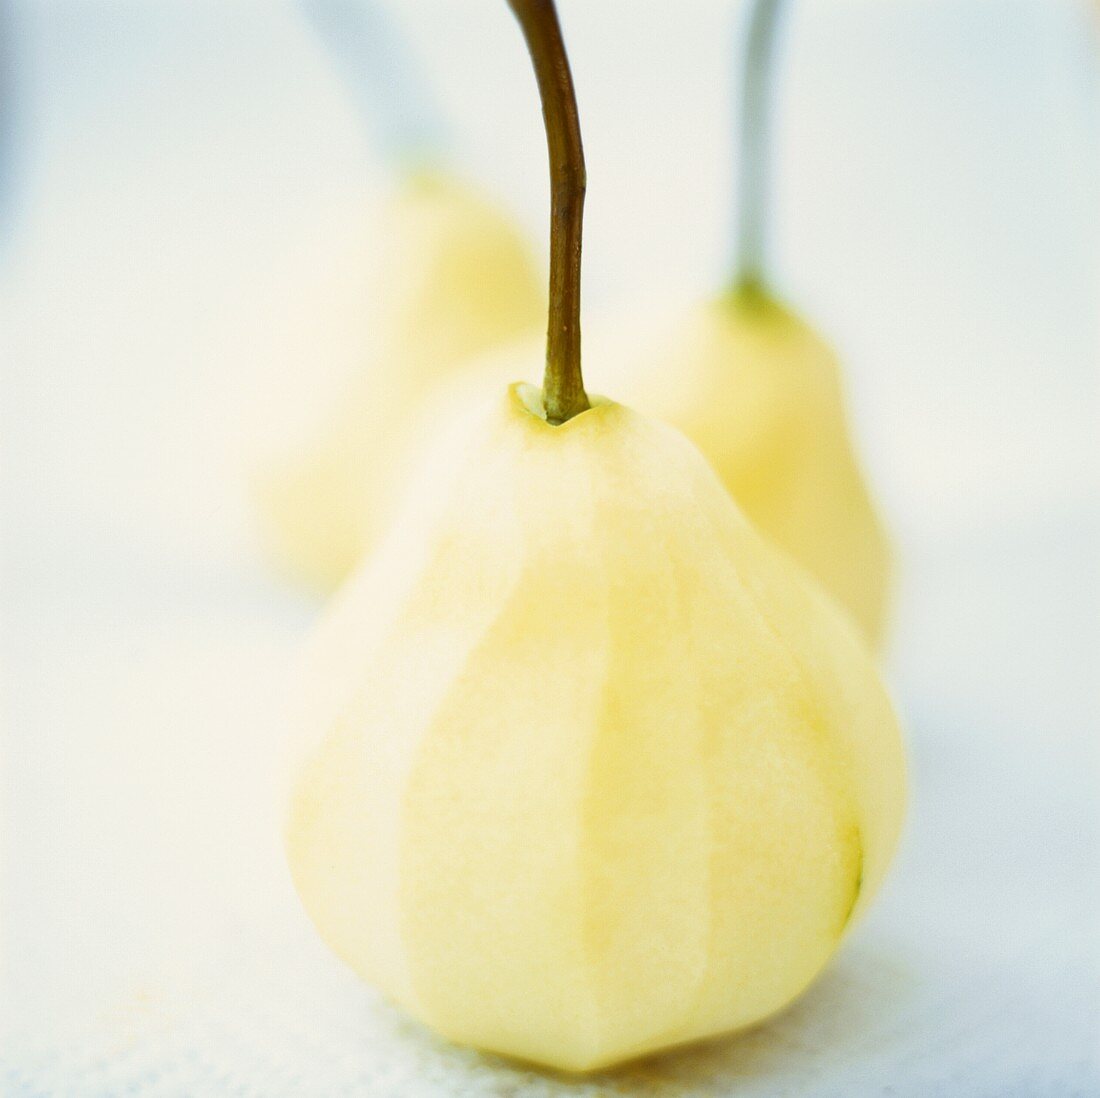 Peeled pears